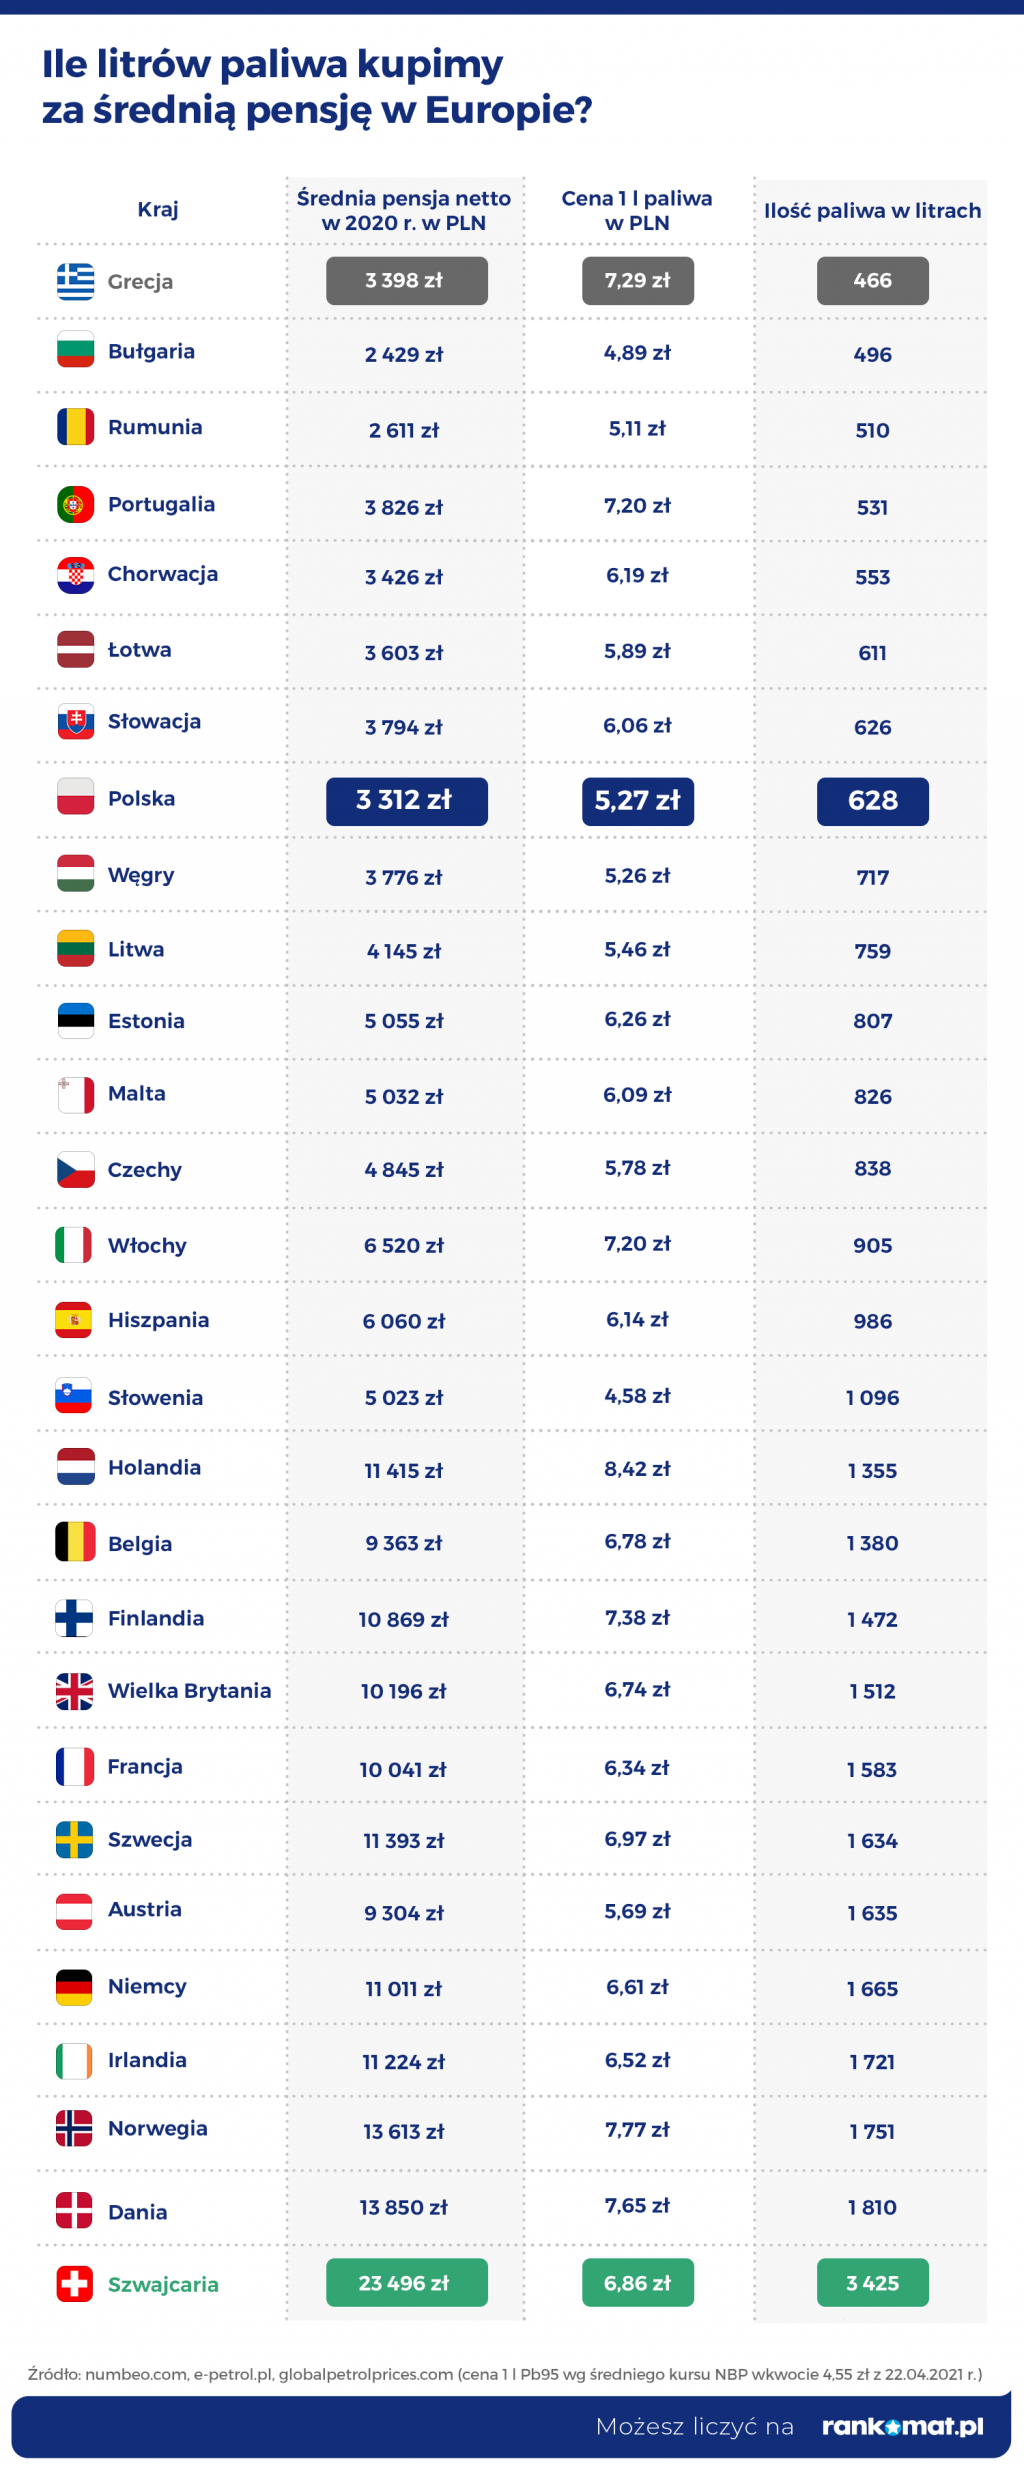 ile litrów paliwa kupimy za średnią pensję w europie